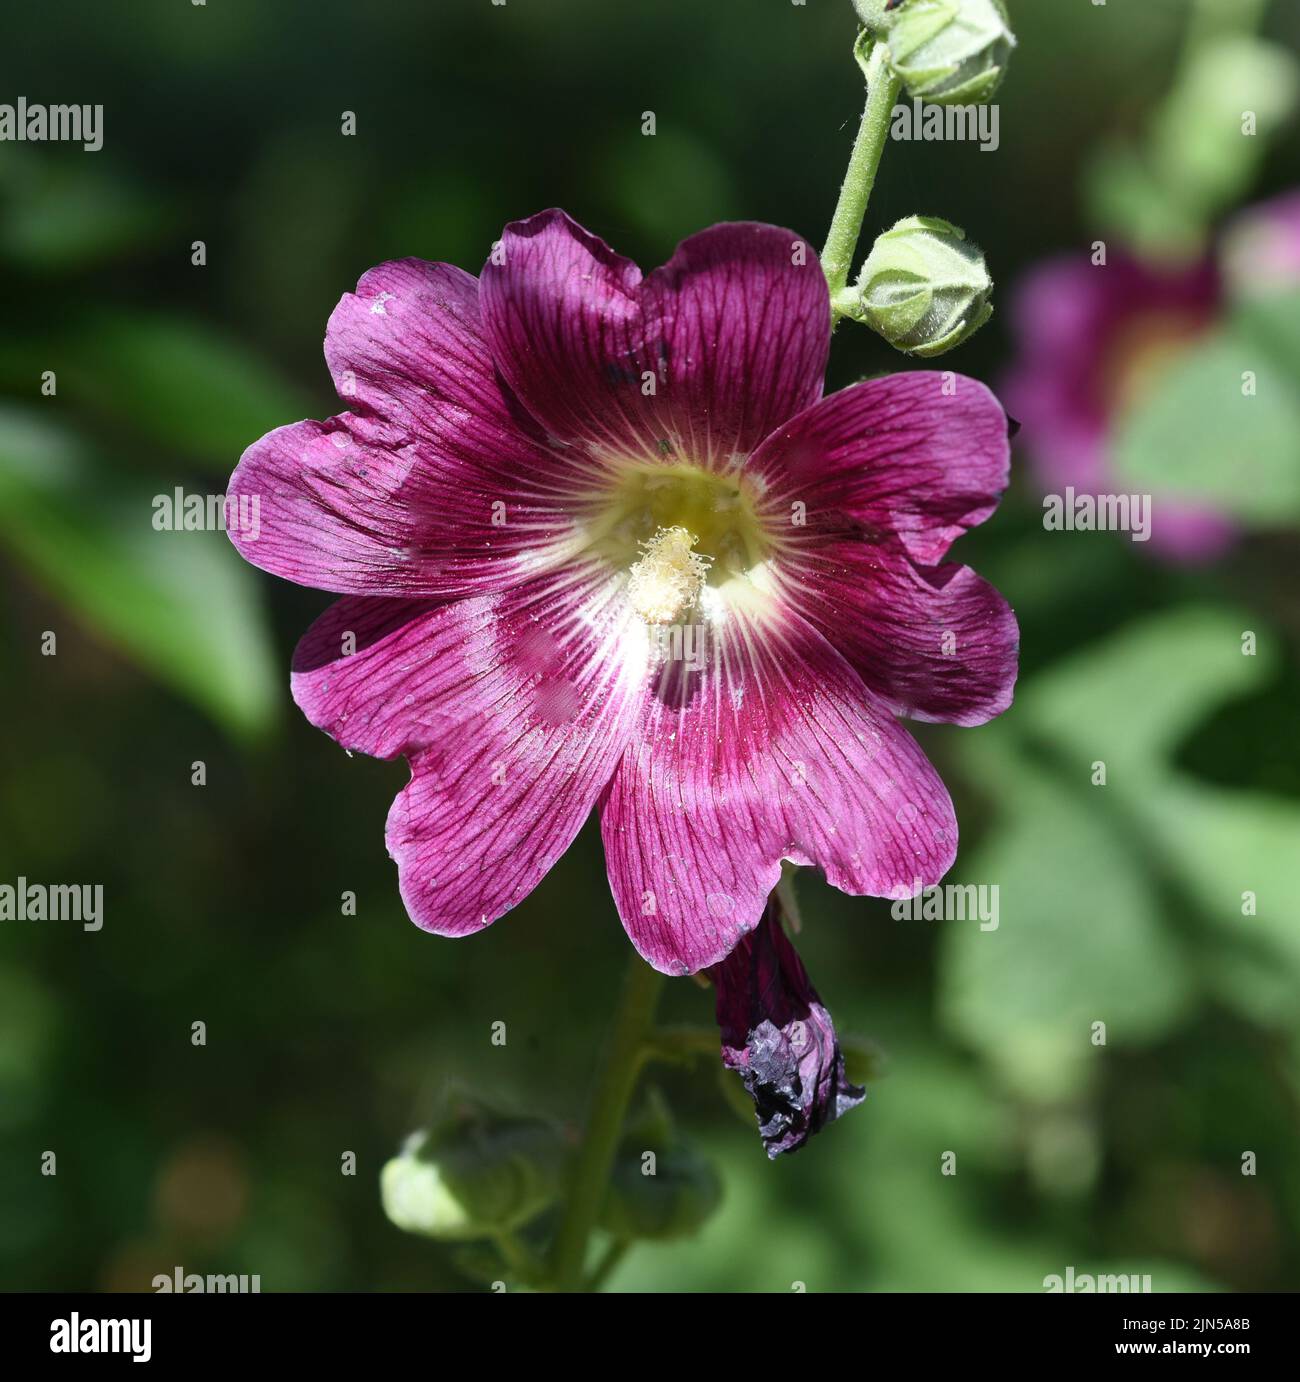 Stockrose, Alcea rosea, auch unter den Namen Stockmalve oder Bauernrose bekannt ist eine schoene Gartenblume und eine Heilpflanze. Hollyhock, Alcea ro Stock Photo